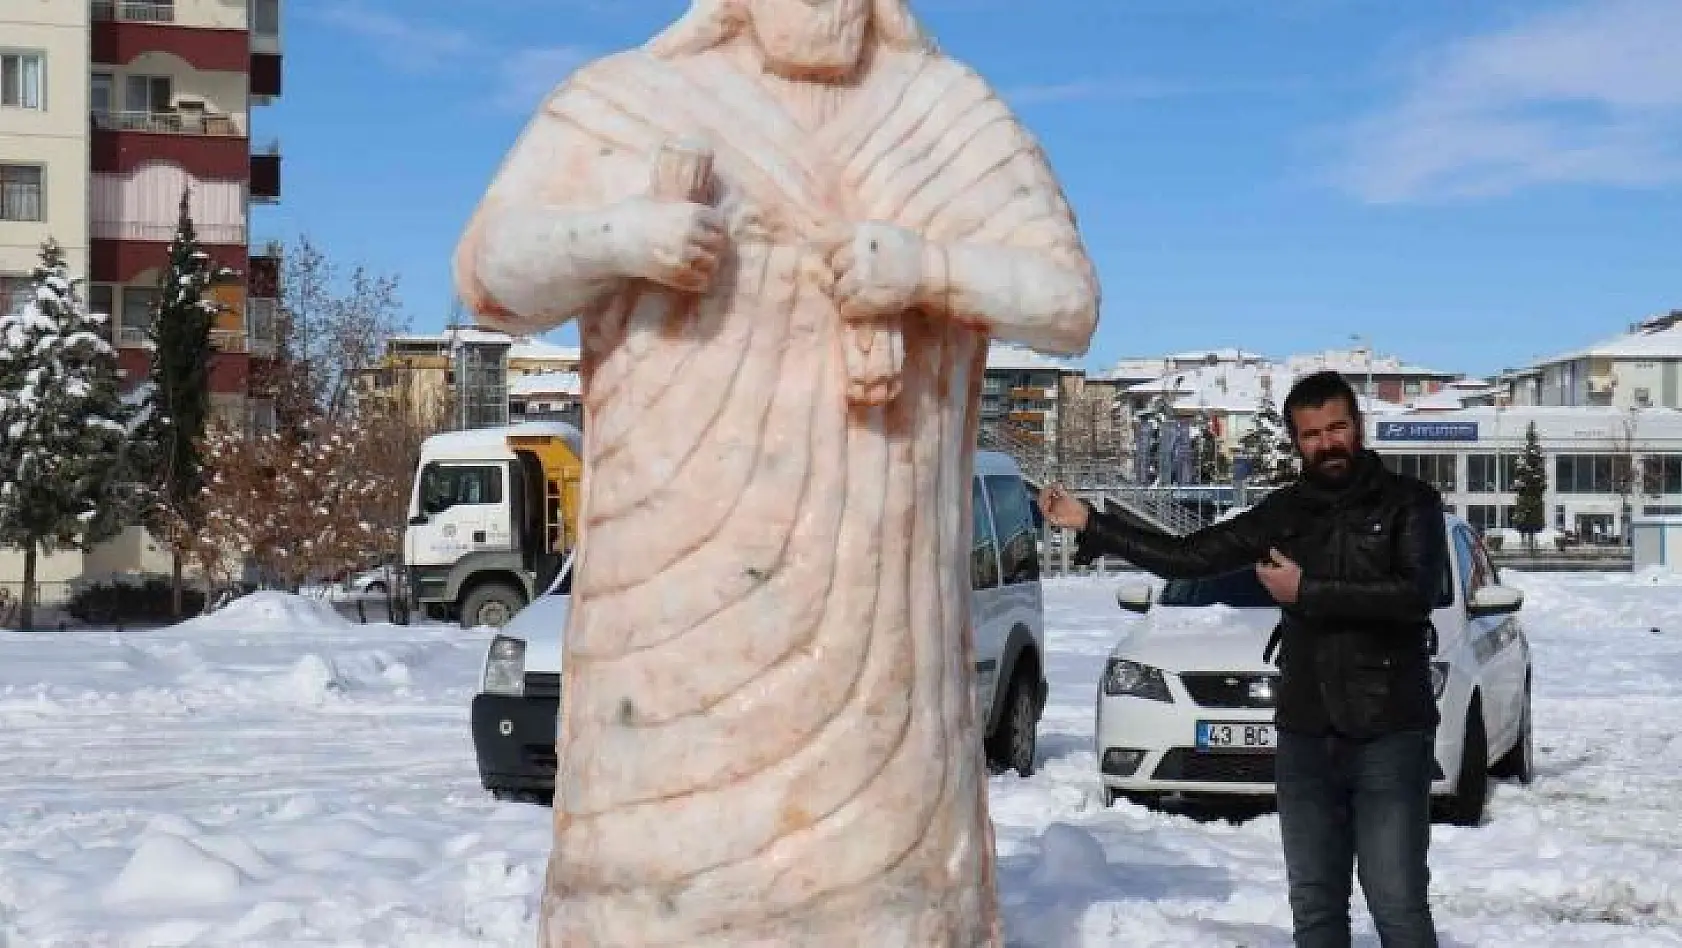 Malatya'da kardan dev Tarhunza heykeli yoğun ilgi görüyor